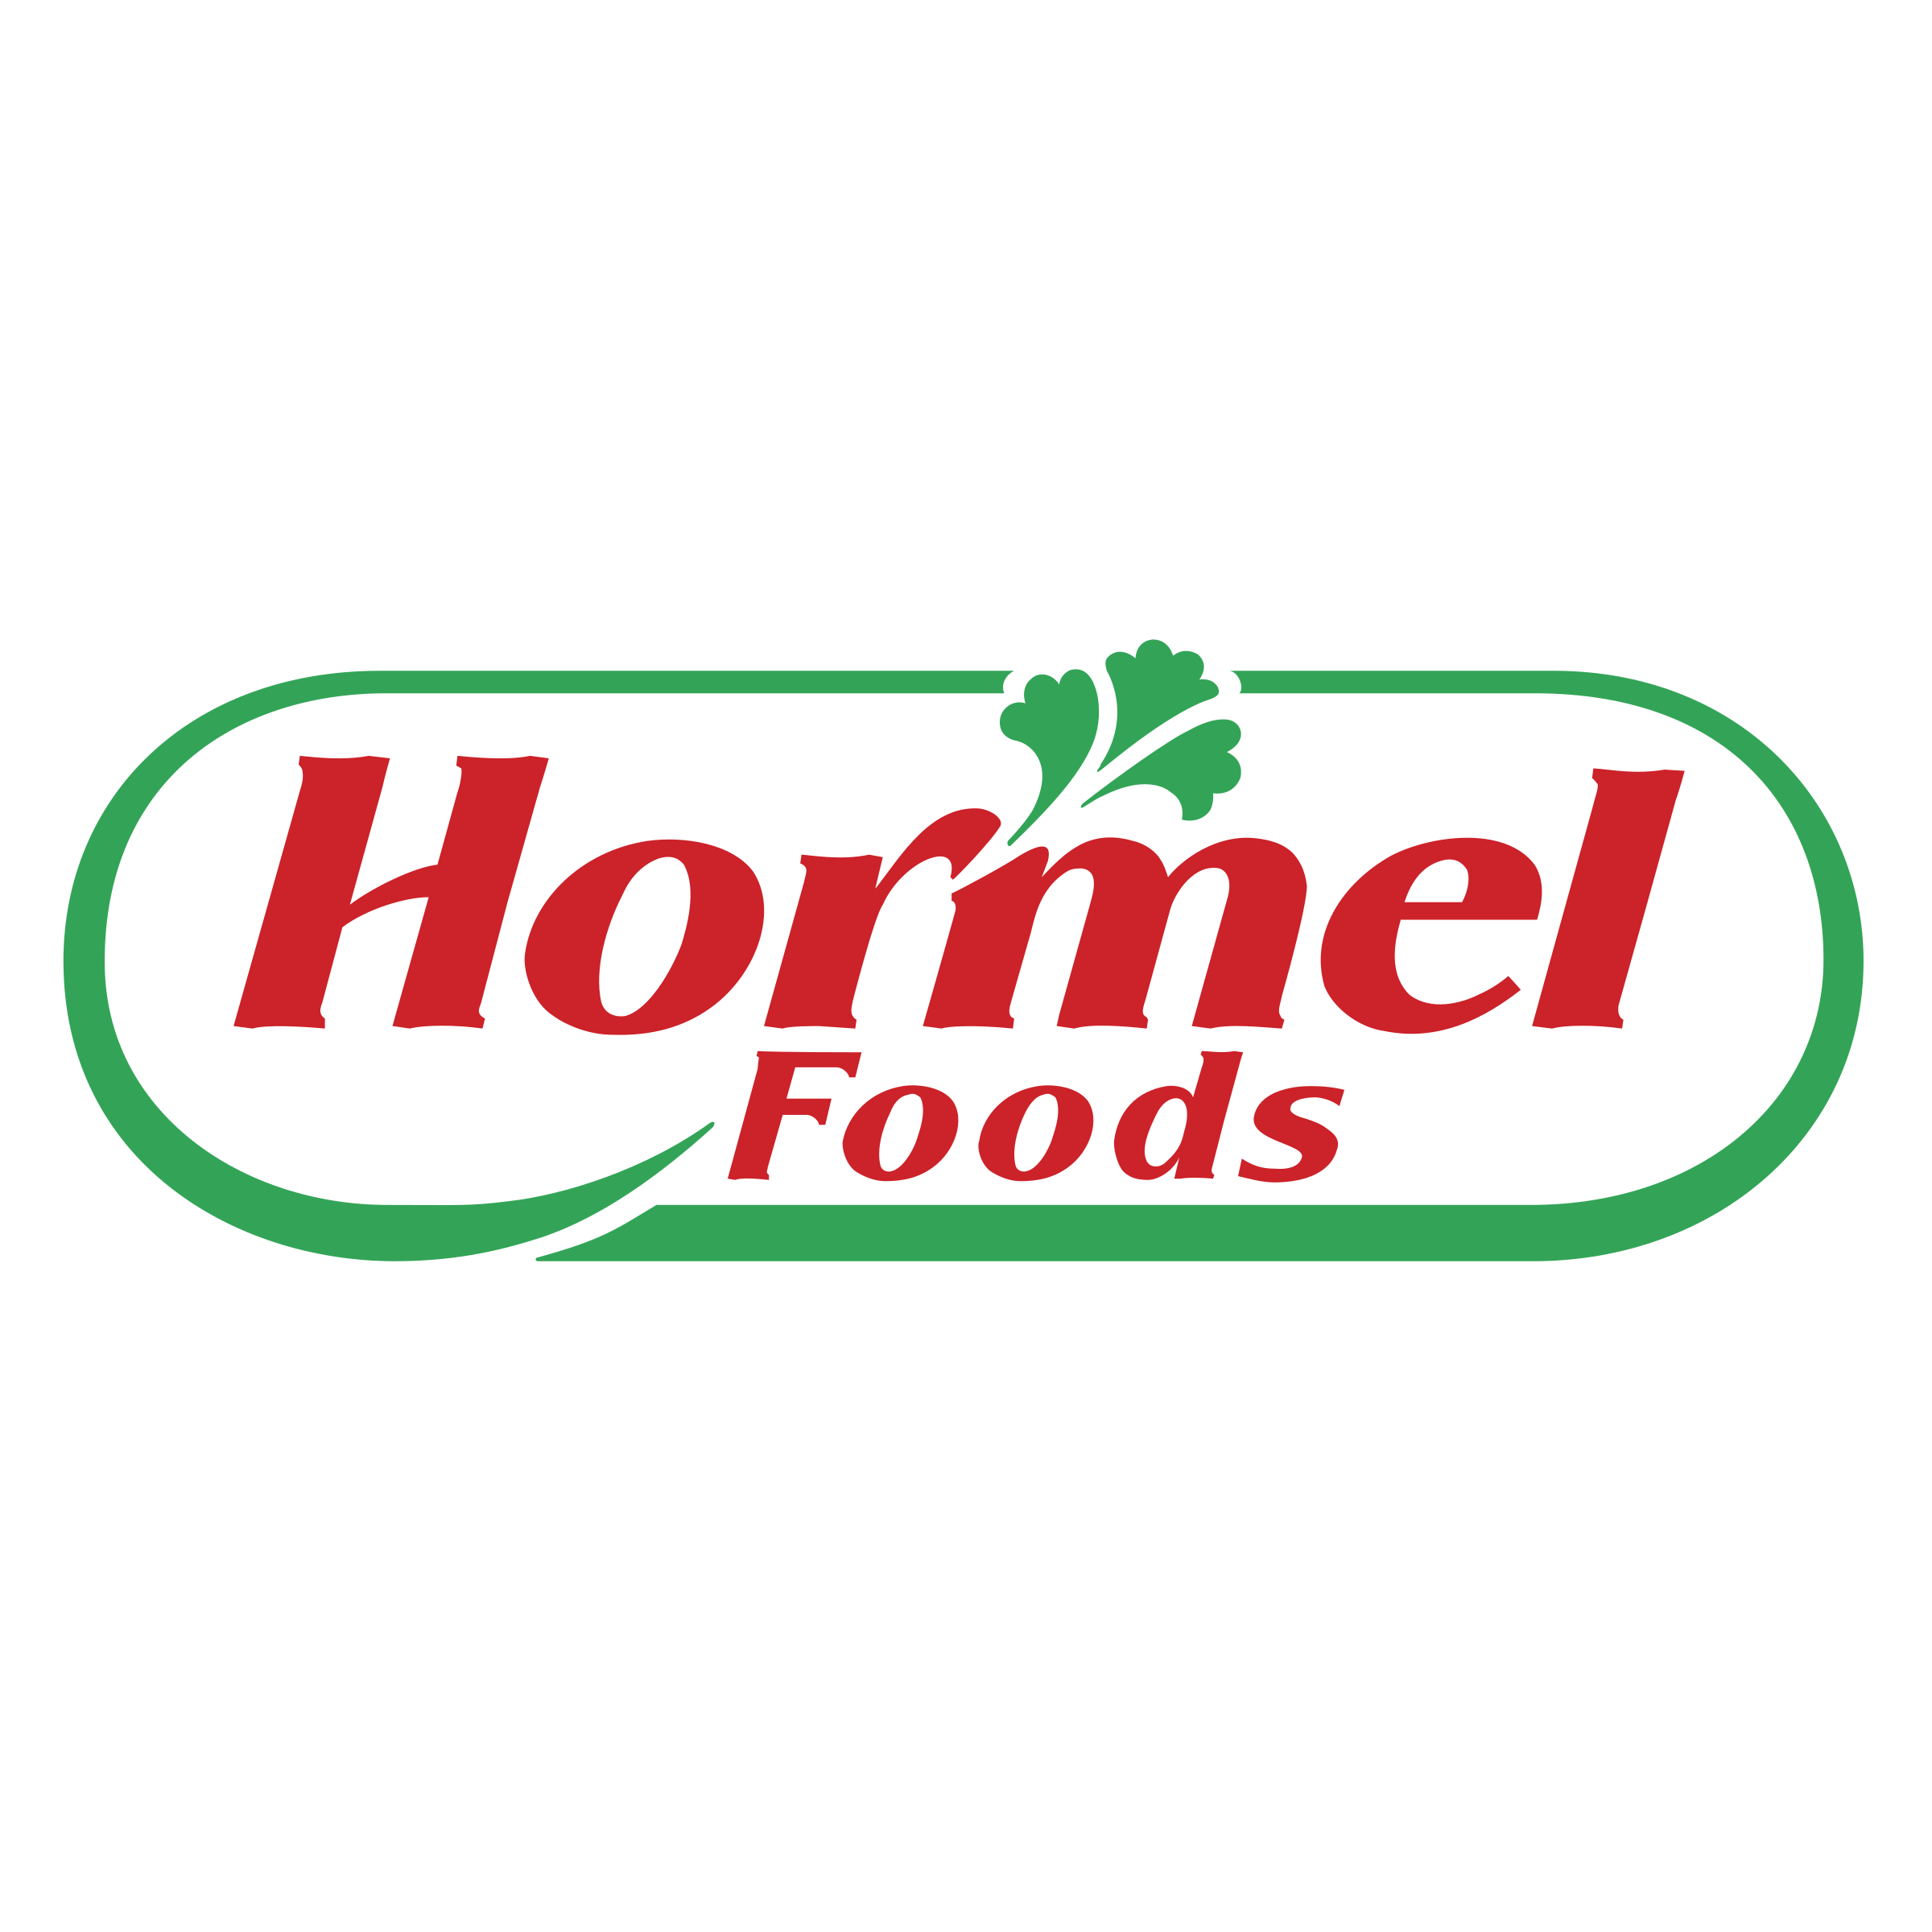 hormel-foods.png